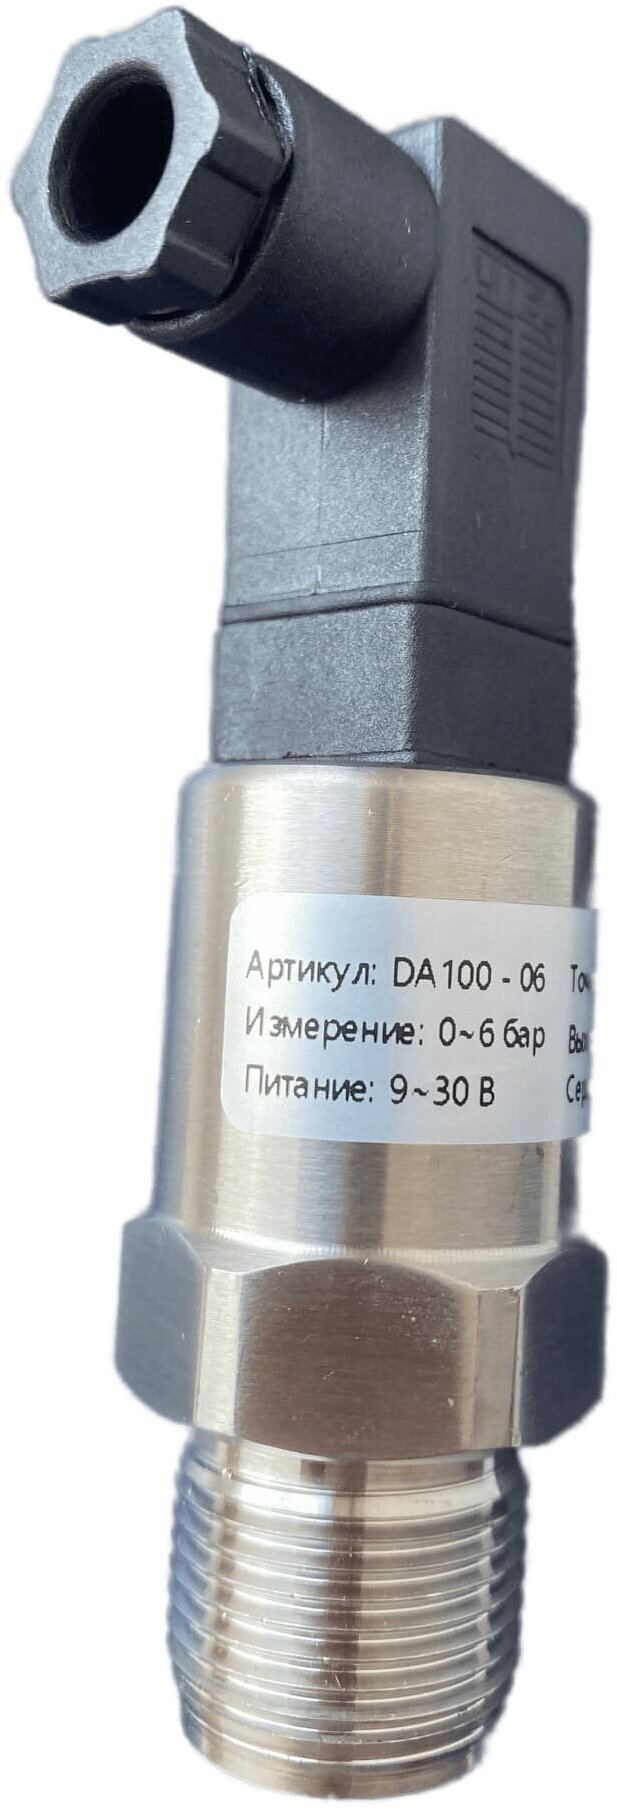 DA100-06 Датчик давления 24В с выходом 4-20мА резьба М20х15 давление 0-6 бар